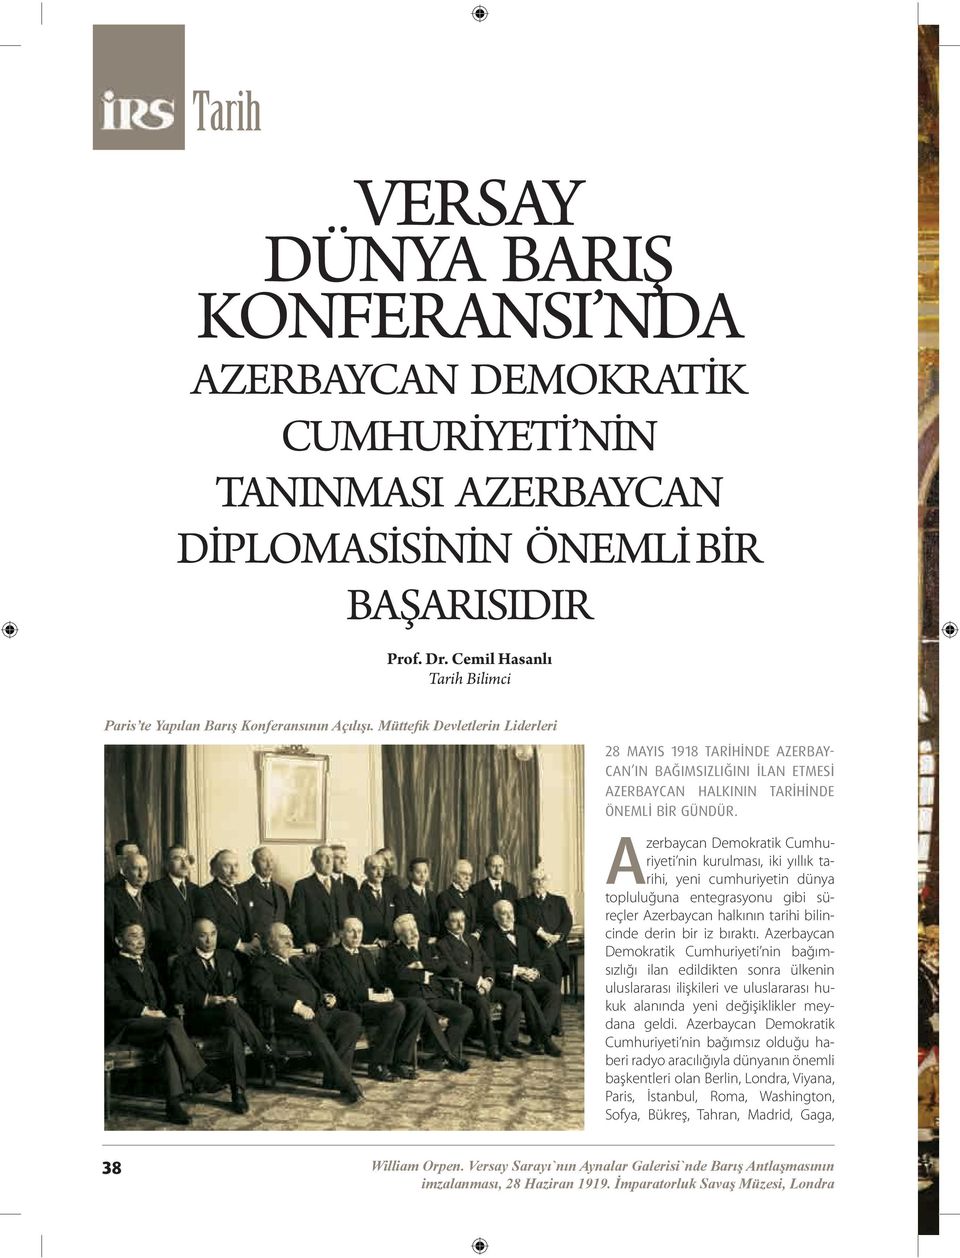 Müttefik Devletlerin Liderleri 28 MAYIS 1918 TARİHİNDE AZERBAY- CAN IN BAĞIMSIZLIĞINI İLAN ETMESİ AZERBAYCAN HALKININ TARİHİNDE ÖNEMLİ BİR GÜNDÜR.